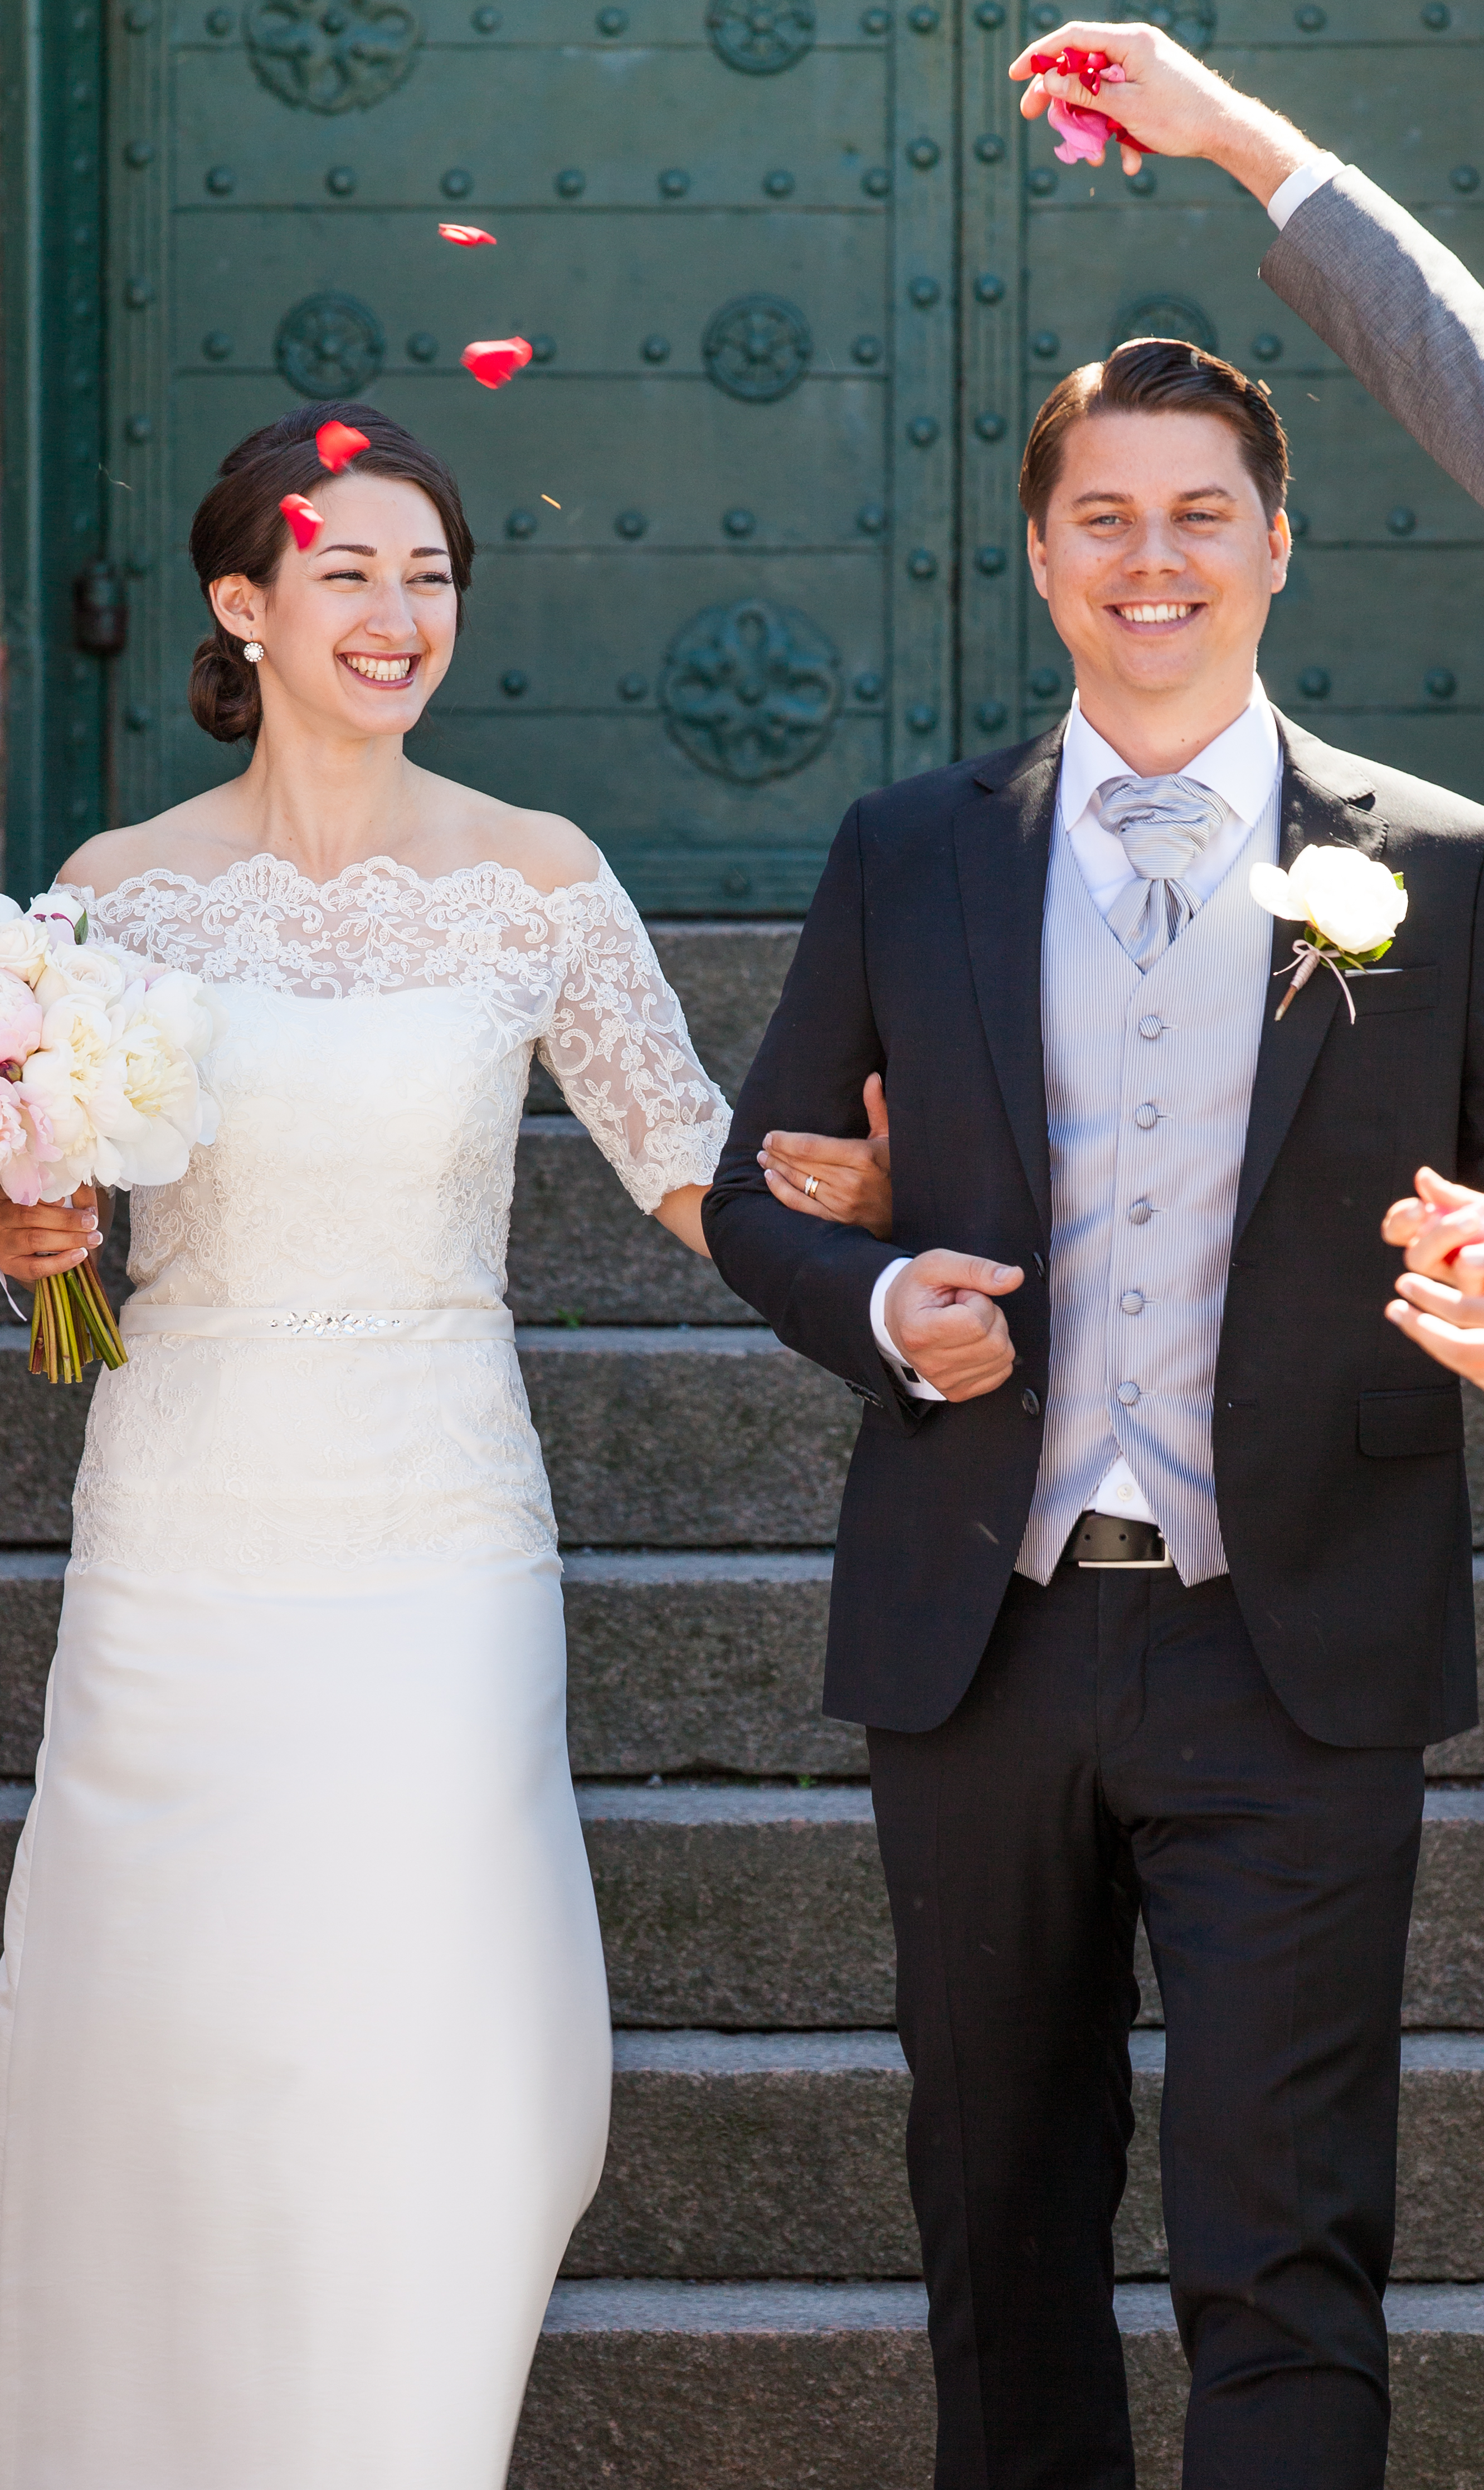 a wedding in Gothenburg, Sweden in June 2014, picture 2/6